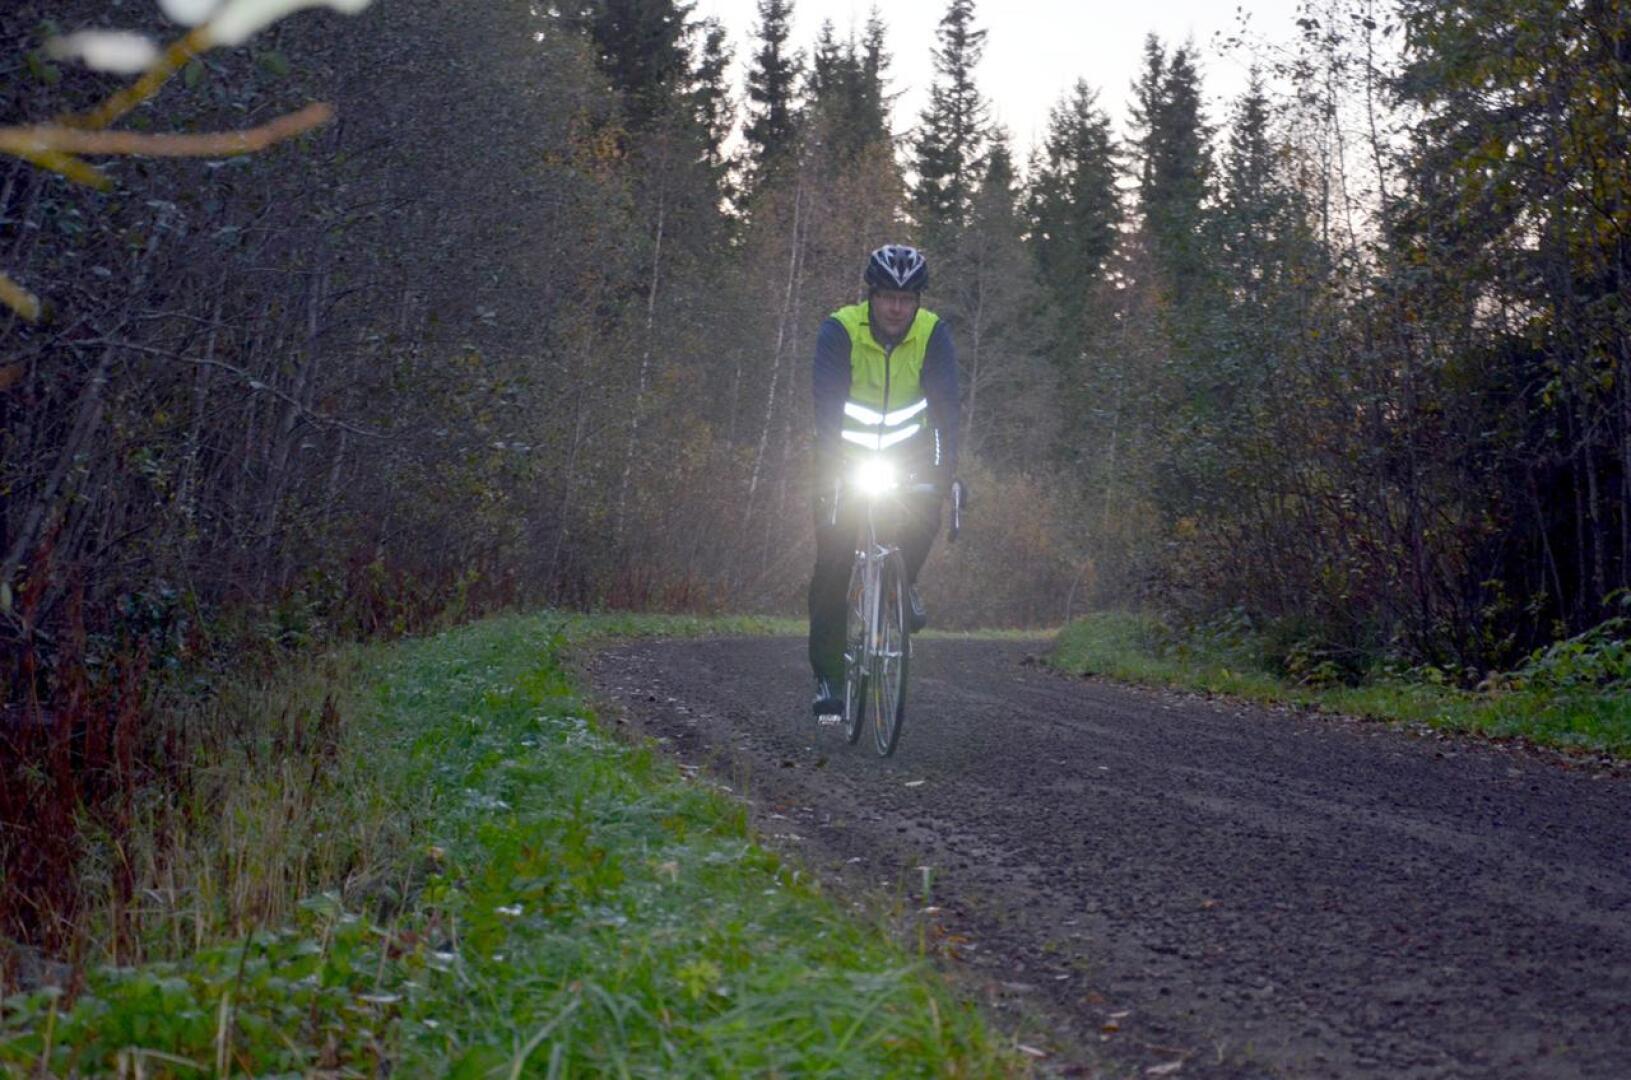 Kesäkuussa uudistuneen tieliikennelain mukaan polkupyörissä pitää olla etuvalon lisäksi myös punainen takavalo. Kuvassa Jani Isokääntä vuonna 2014.